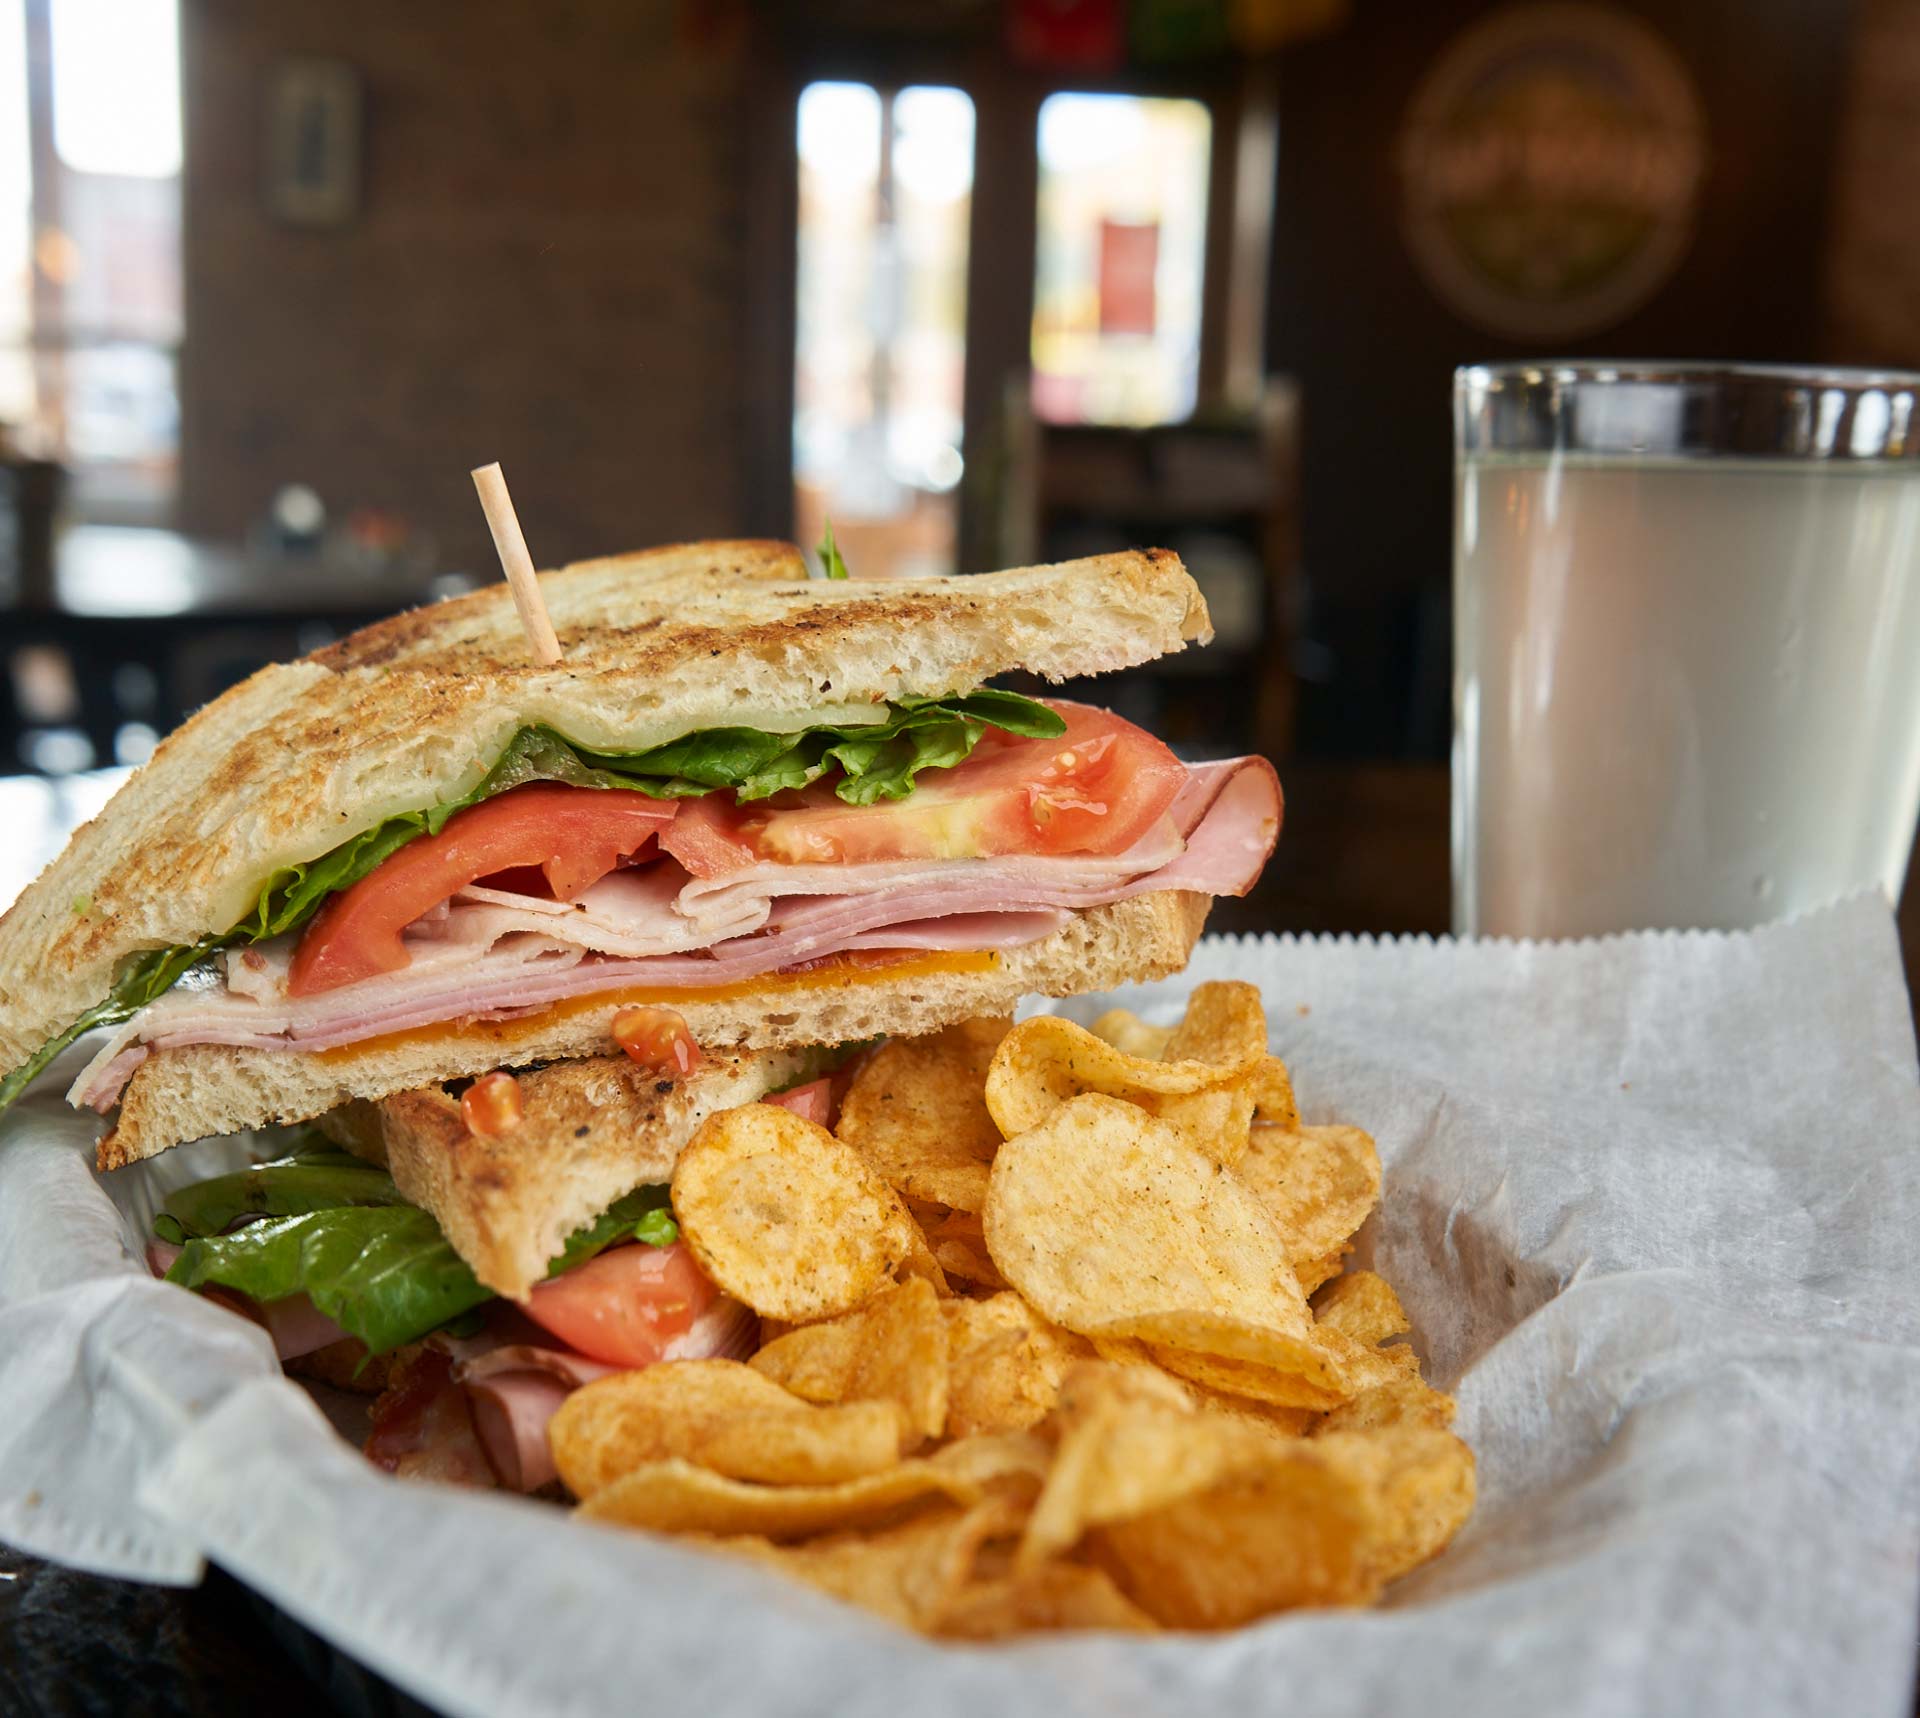 the club sandwich